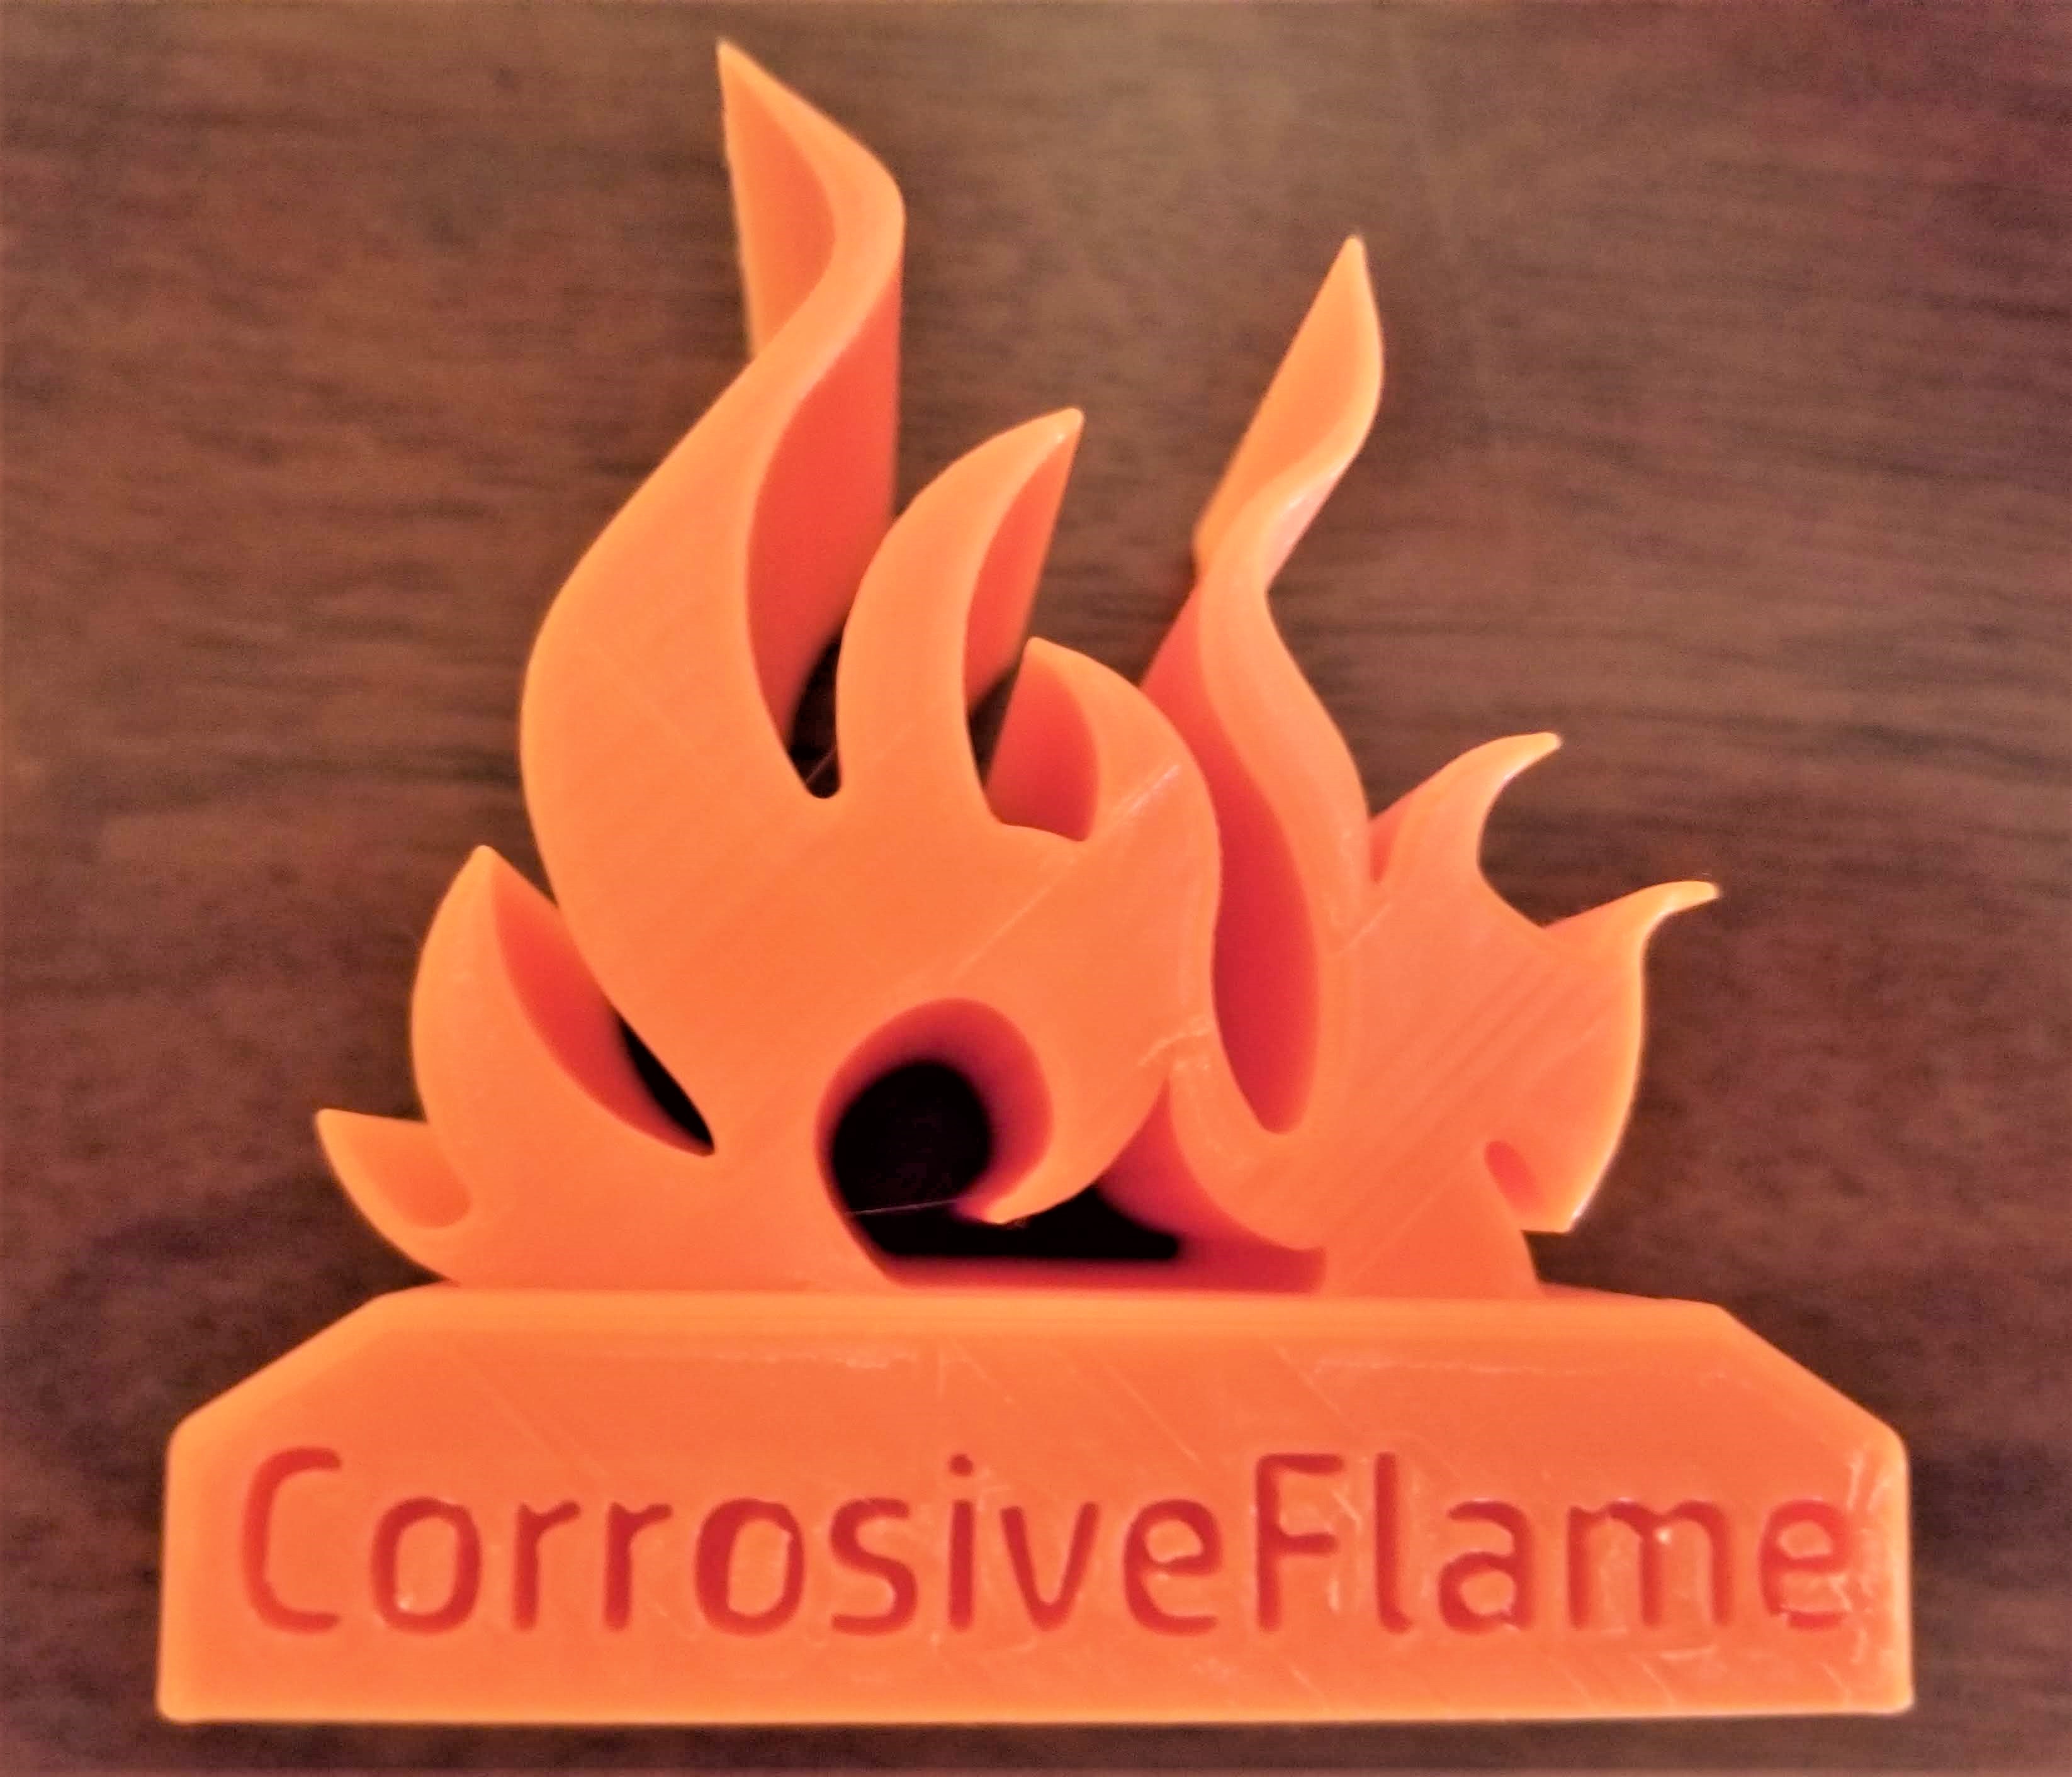 Flame logo pic 1.jpg